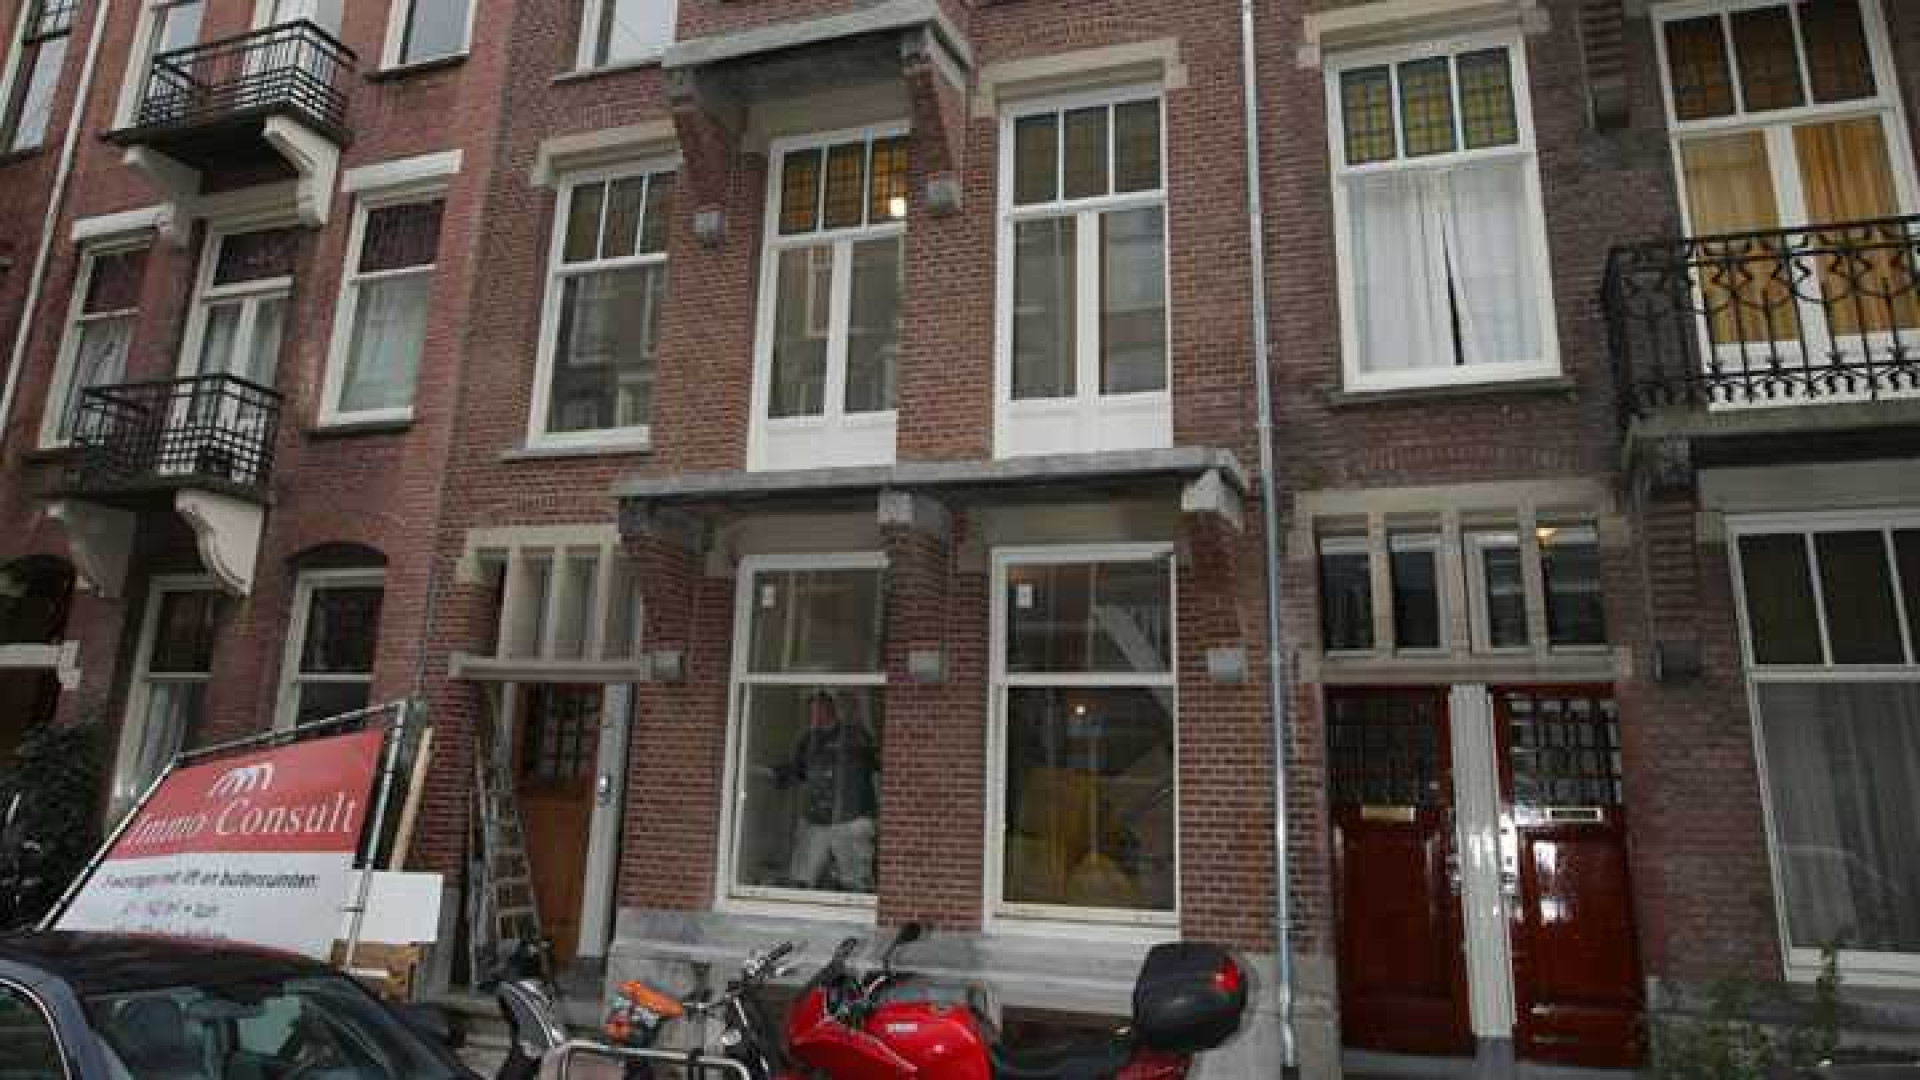 Doutzen Kroes koopt schitterend pand in Amsterdam Oud Zuid. Zie exclusieve foto's 1